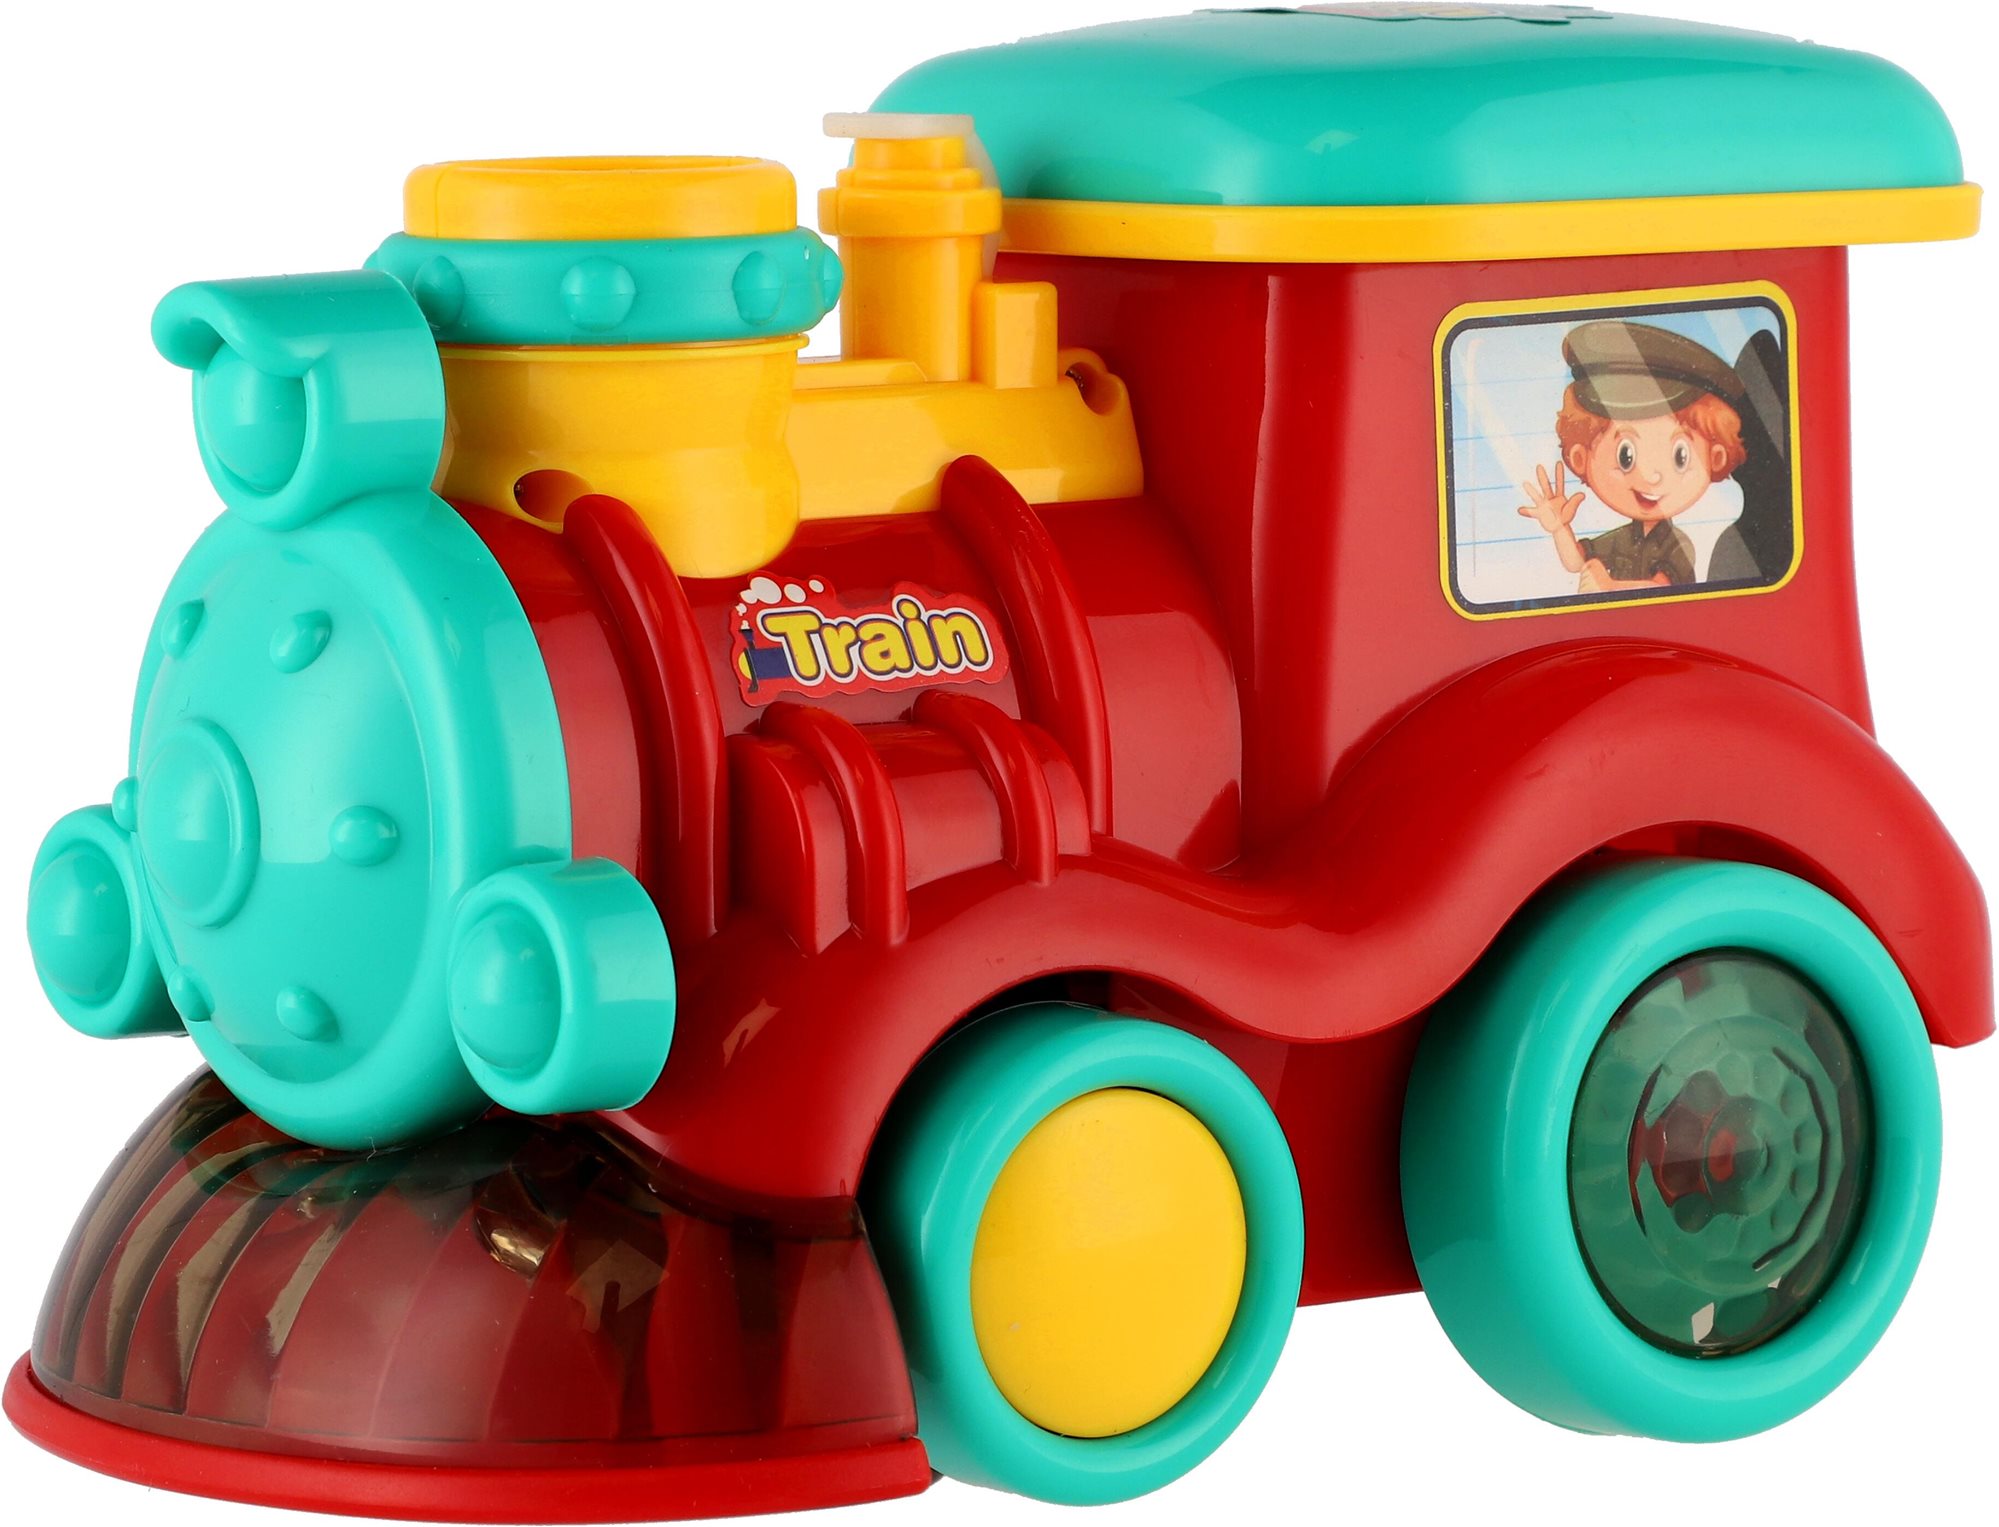 Mozdony/Vonat buborékfújóval műanyag, 18 cm, elemes, hanggal és fénnyel, dobozban 19x13x11 cm